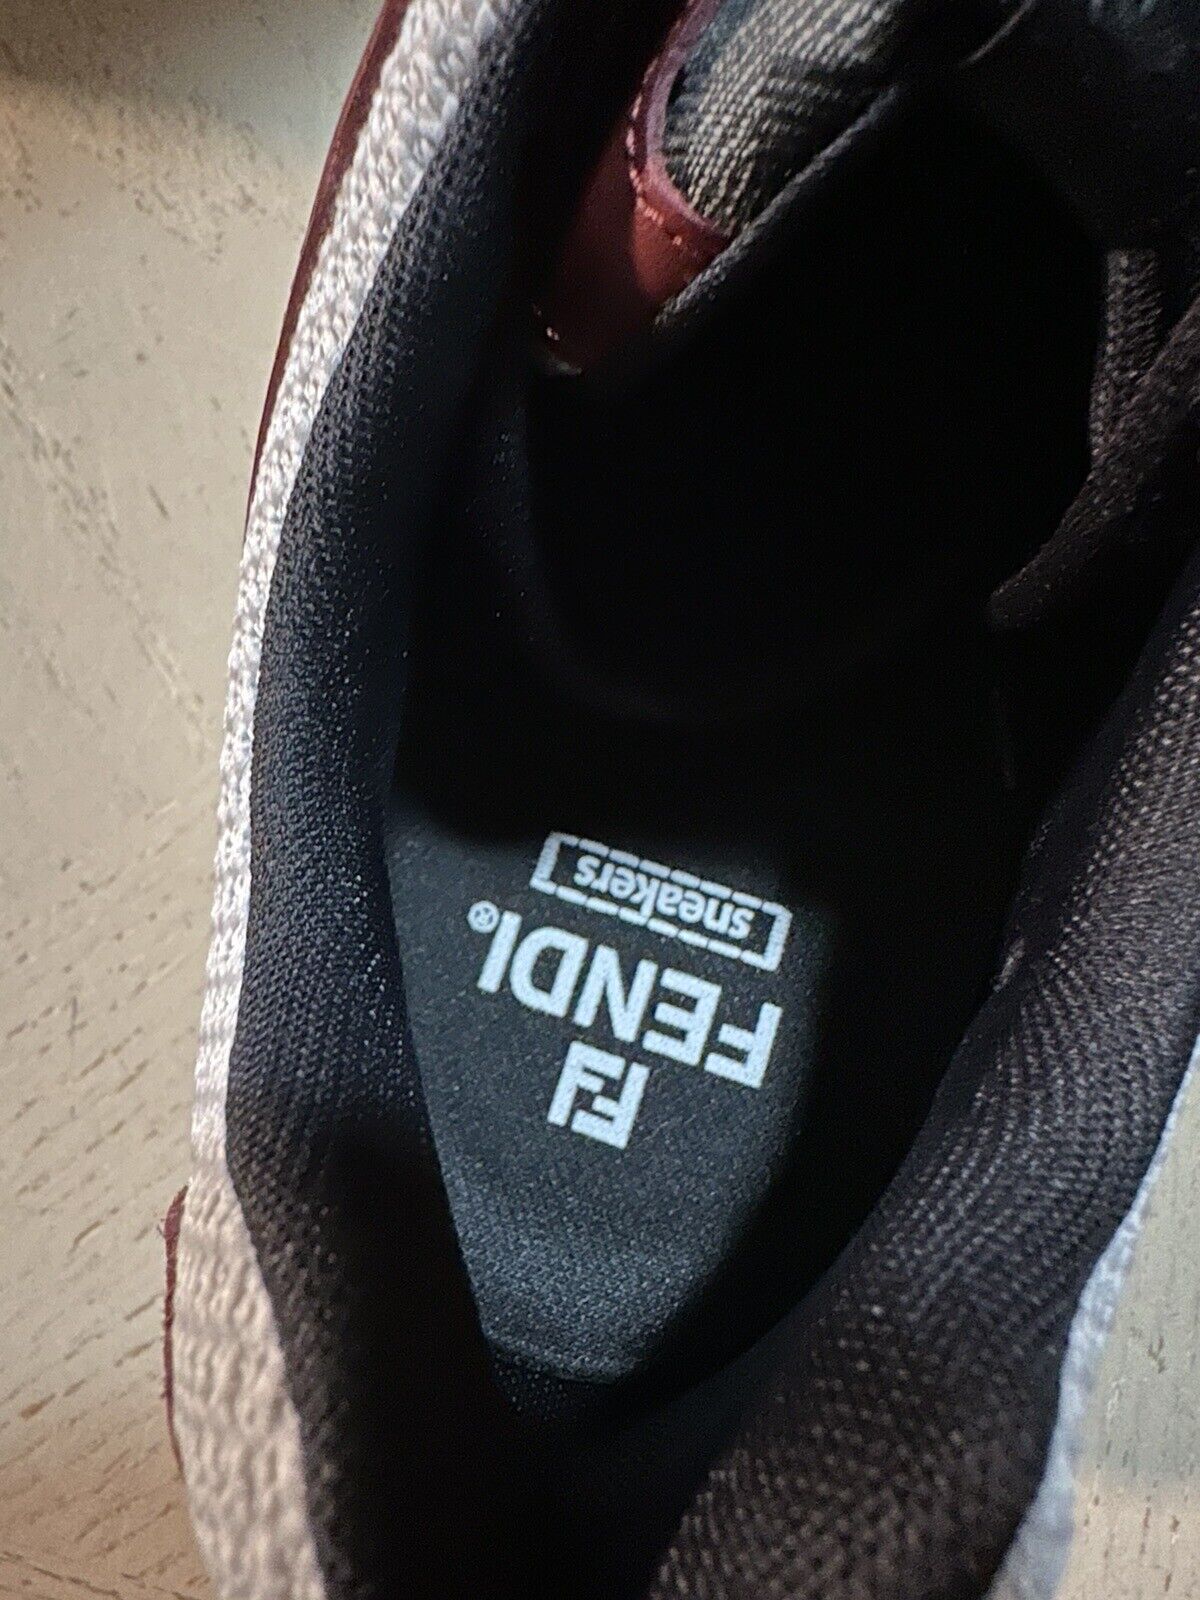 Мужские спортивные кроссовки Fendi с логотипом FF, бордовый цвет 10 США/9 Великобритания, NIB $1100